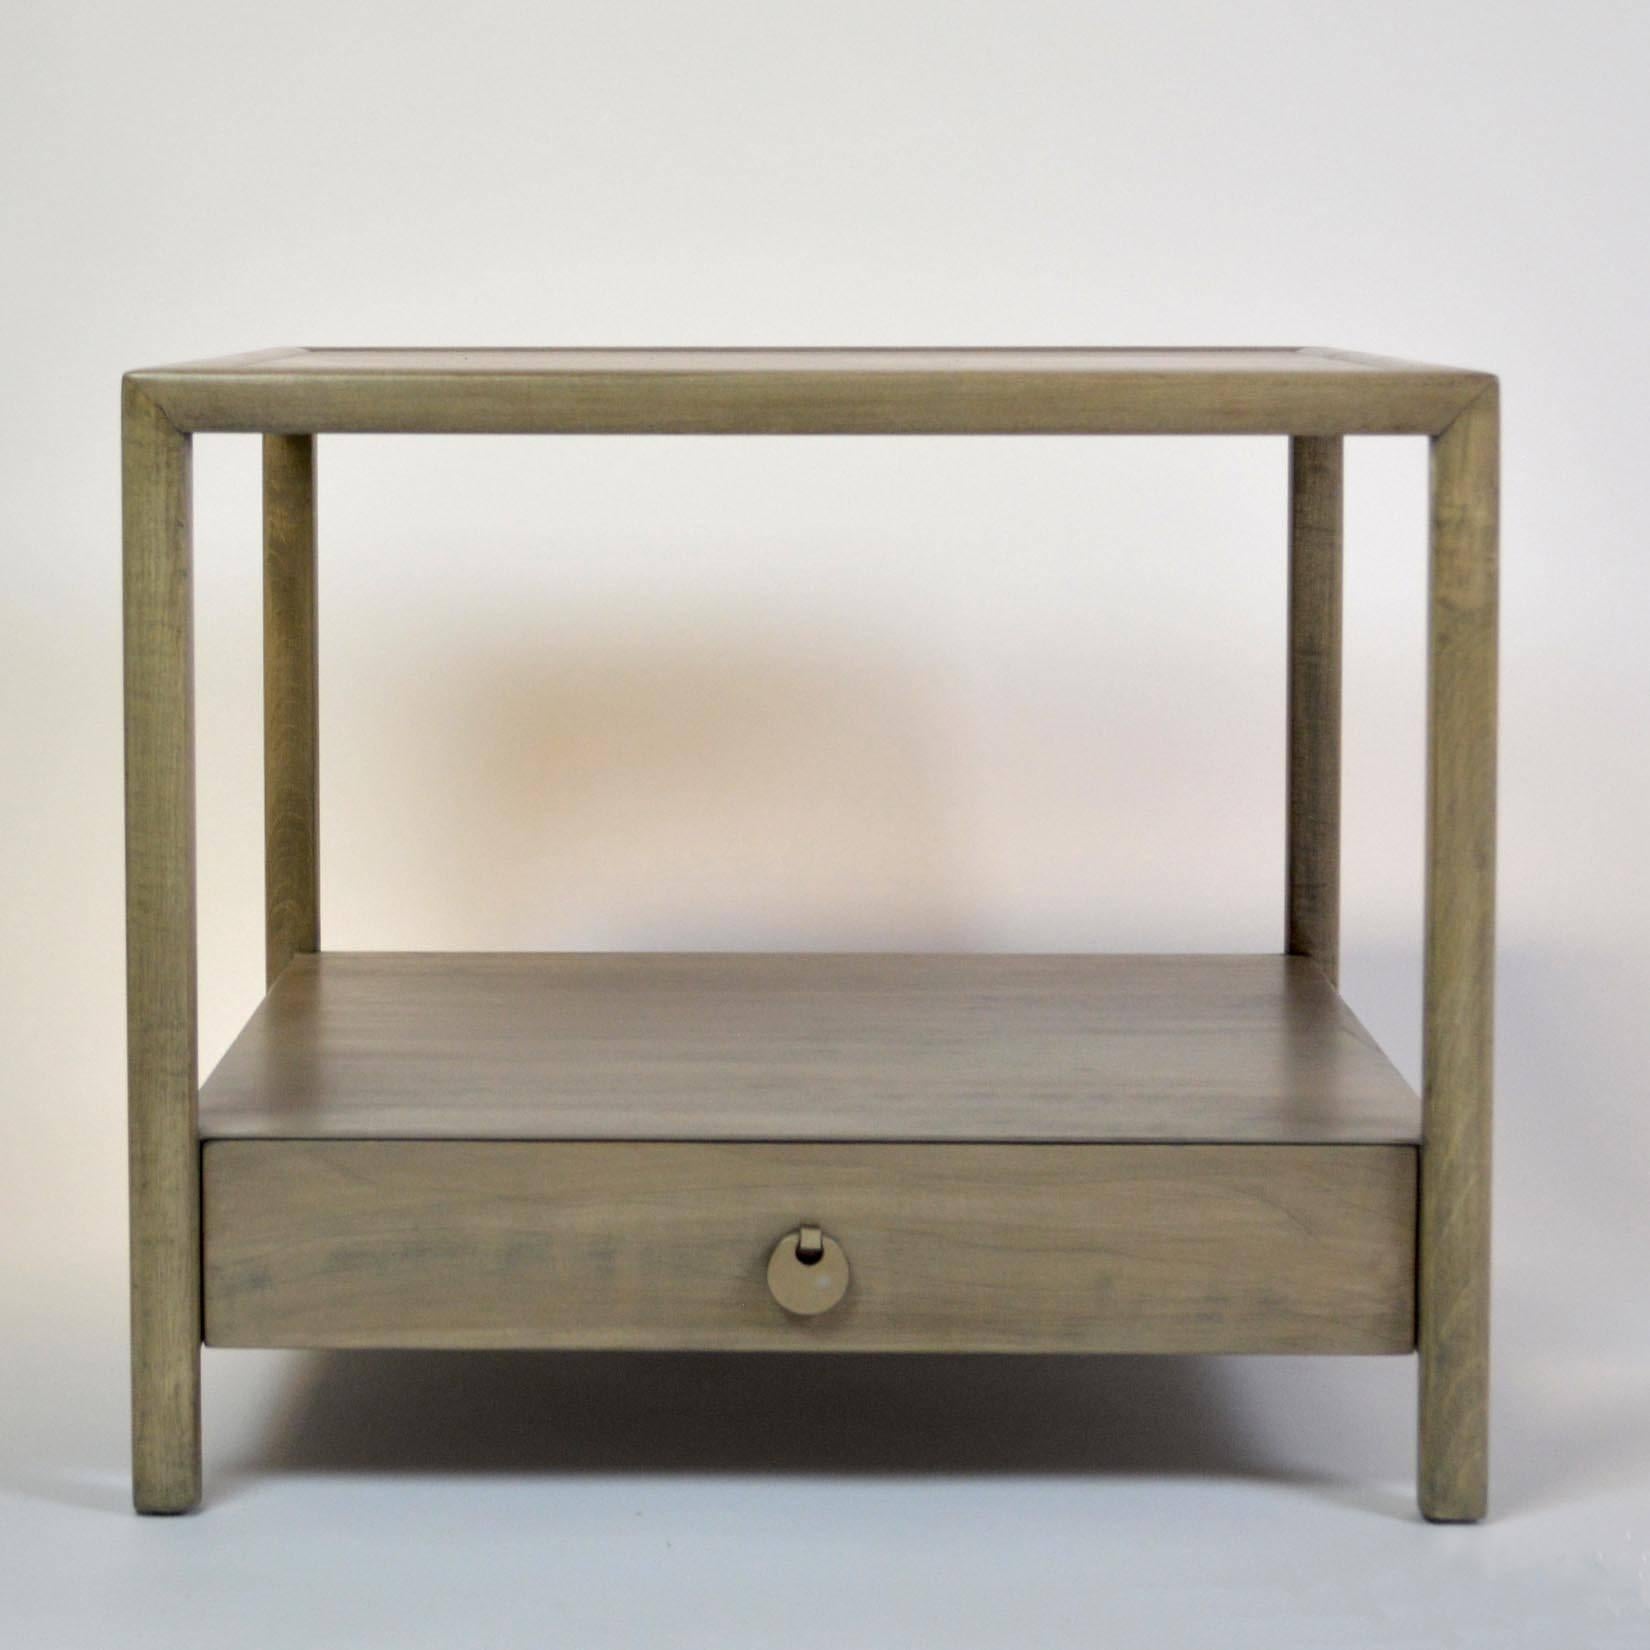 Ein Beistelltisch oder Nachttisch von Michael Taylor für die New World-Kollektion von Baker Furniture, nachgearbeitet in einer hellgrauen Beize.